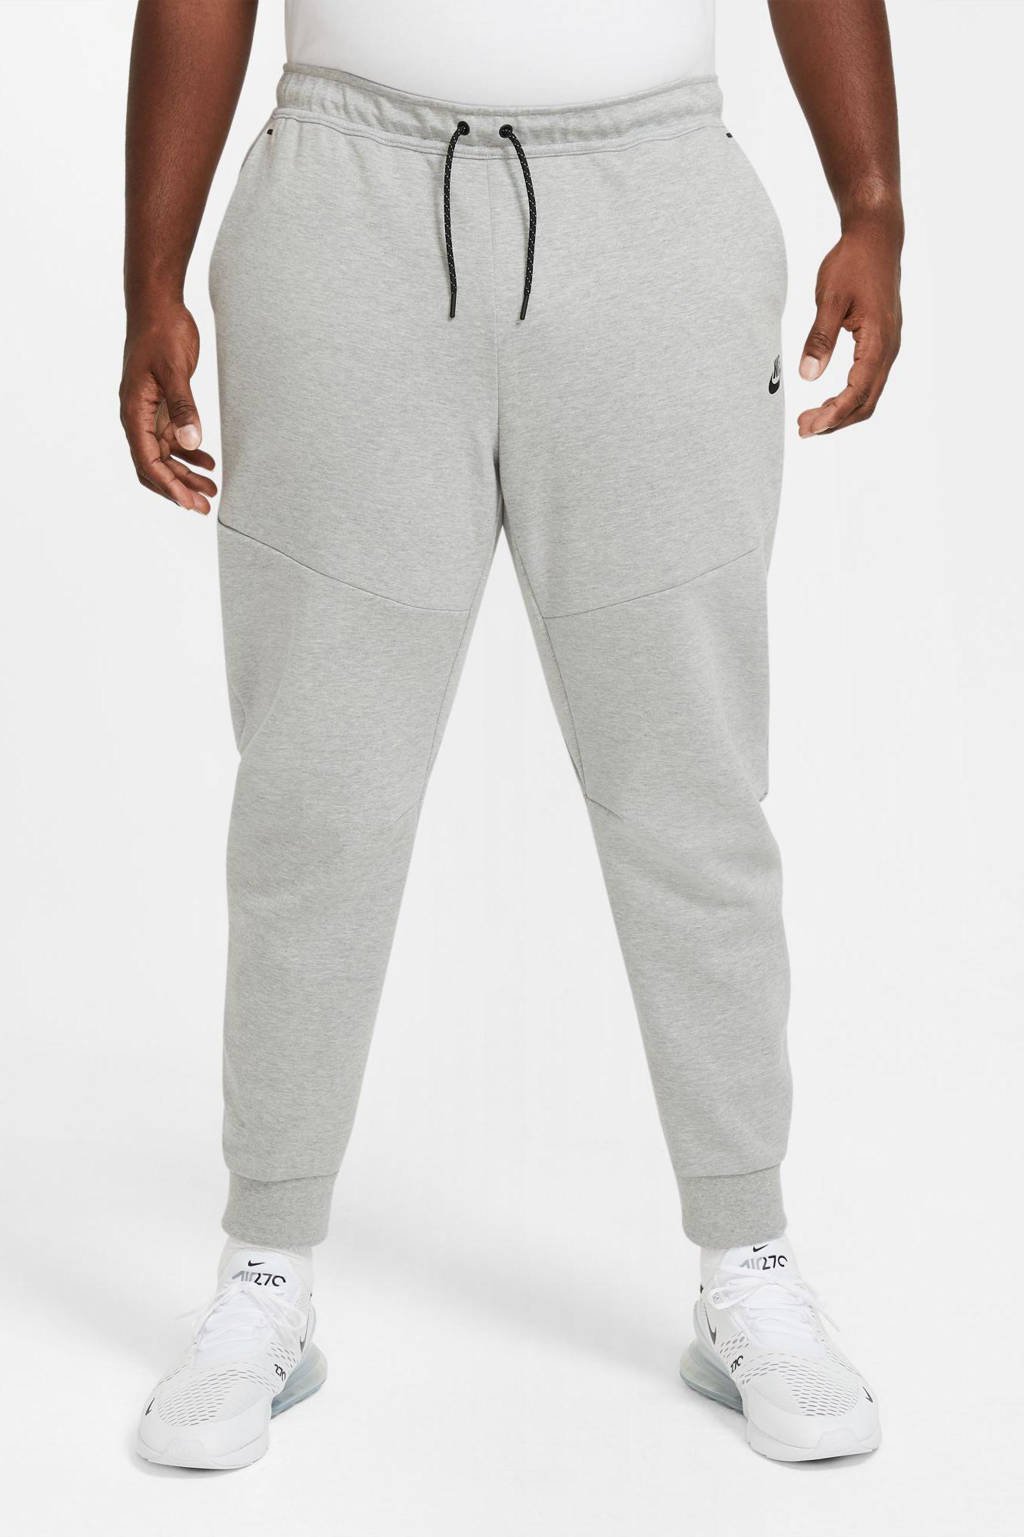 Nike Tech joggingbroek grijs melange/zwart | wehkamp